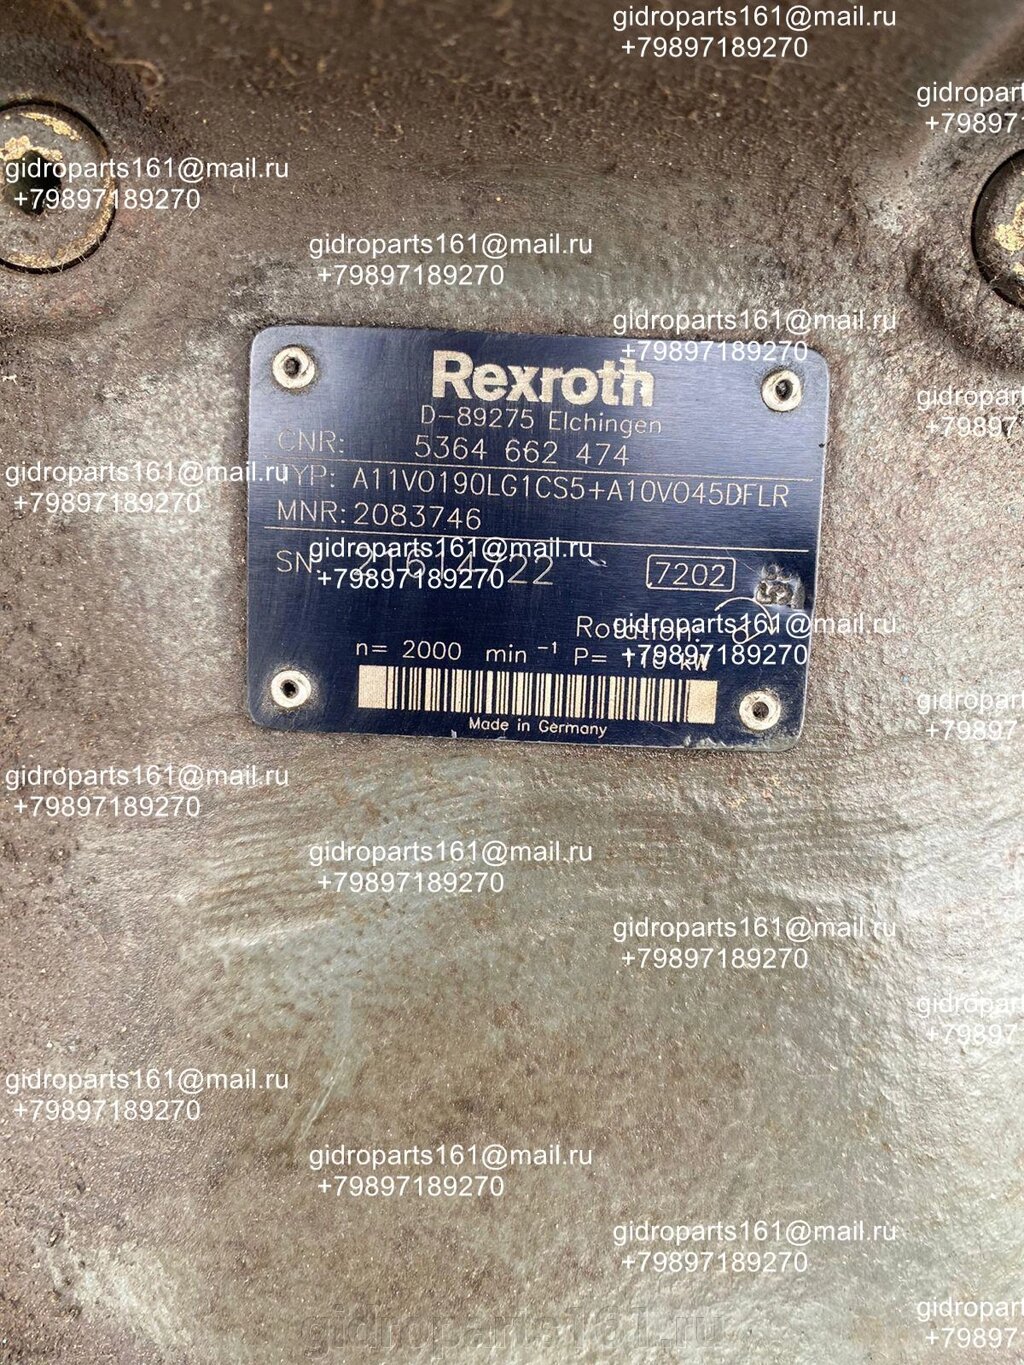 Гидравлический насос REXROTH A11VO190LG1CS5+A10VO45DFLR от компании Гидравлические запчасти 161 - фото 1